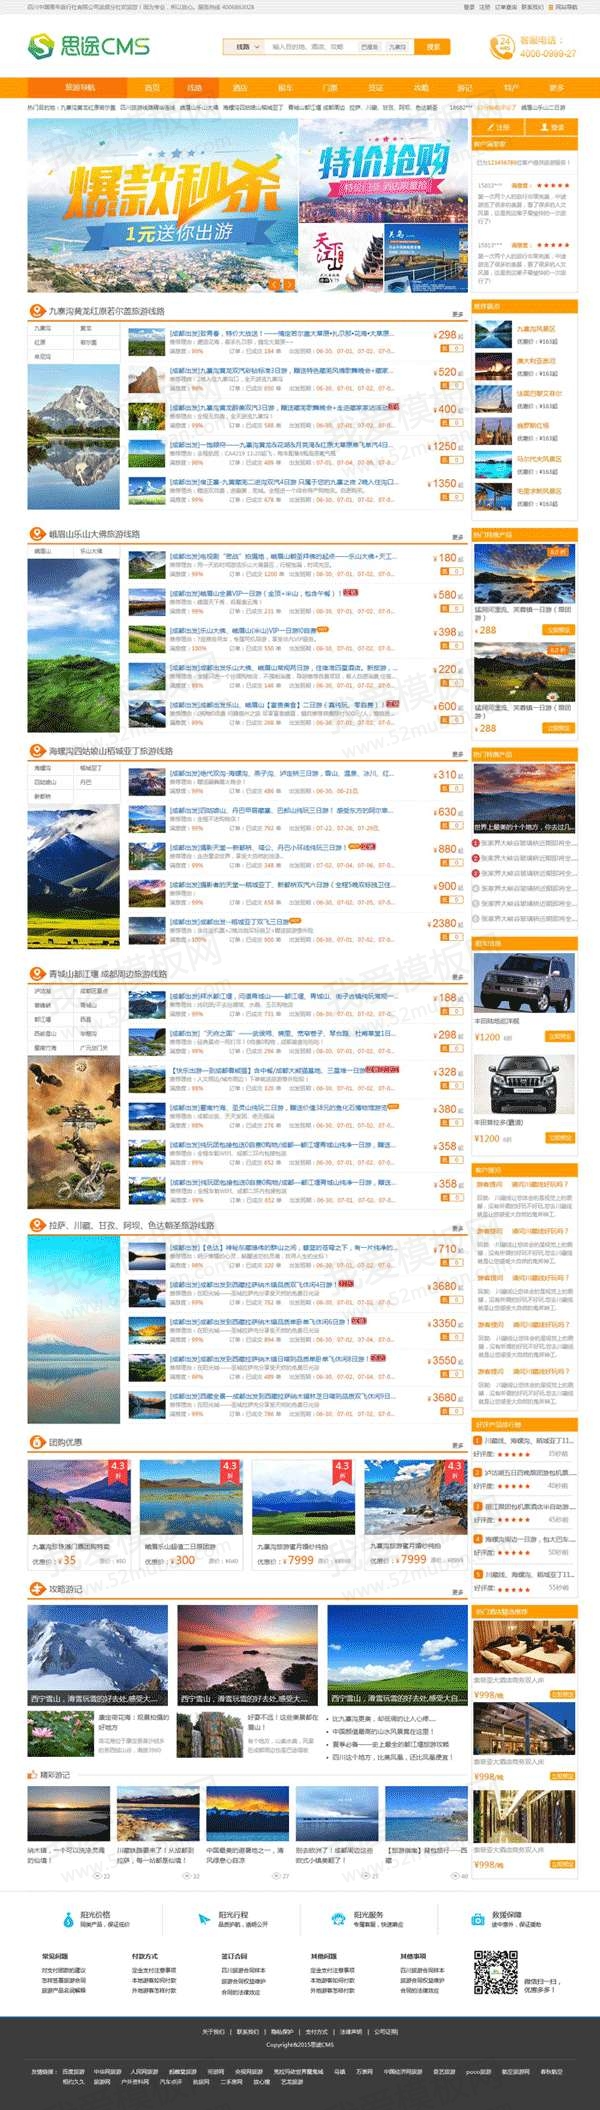 橙色的在线旅游预订网站首页模板psd素材